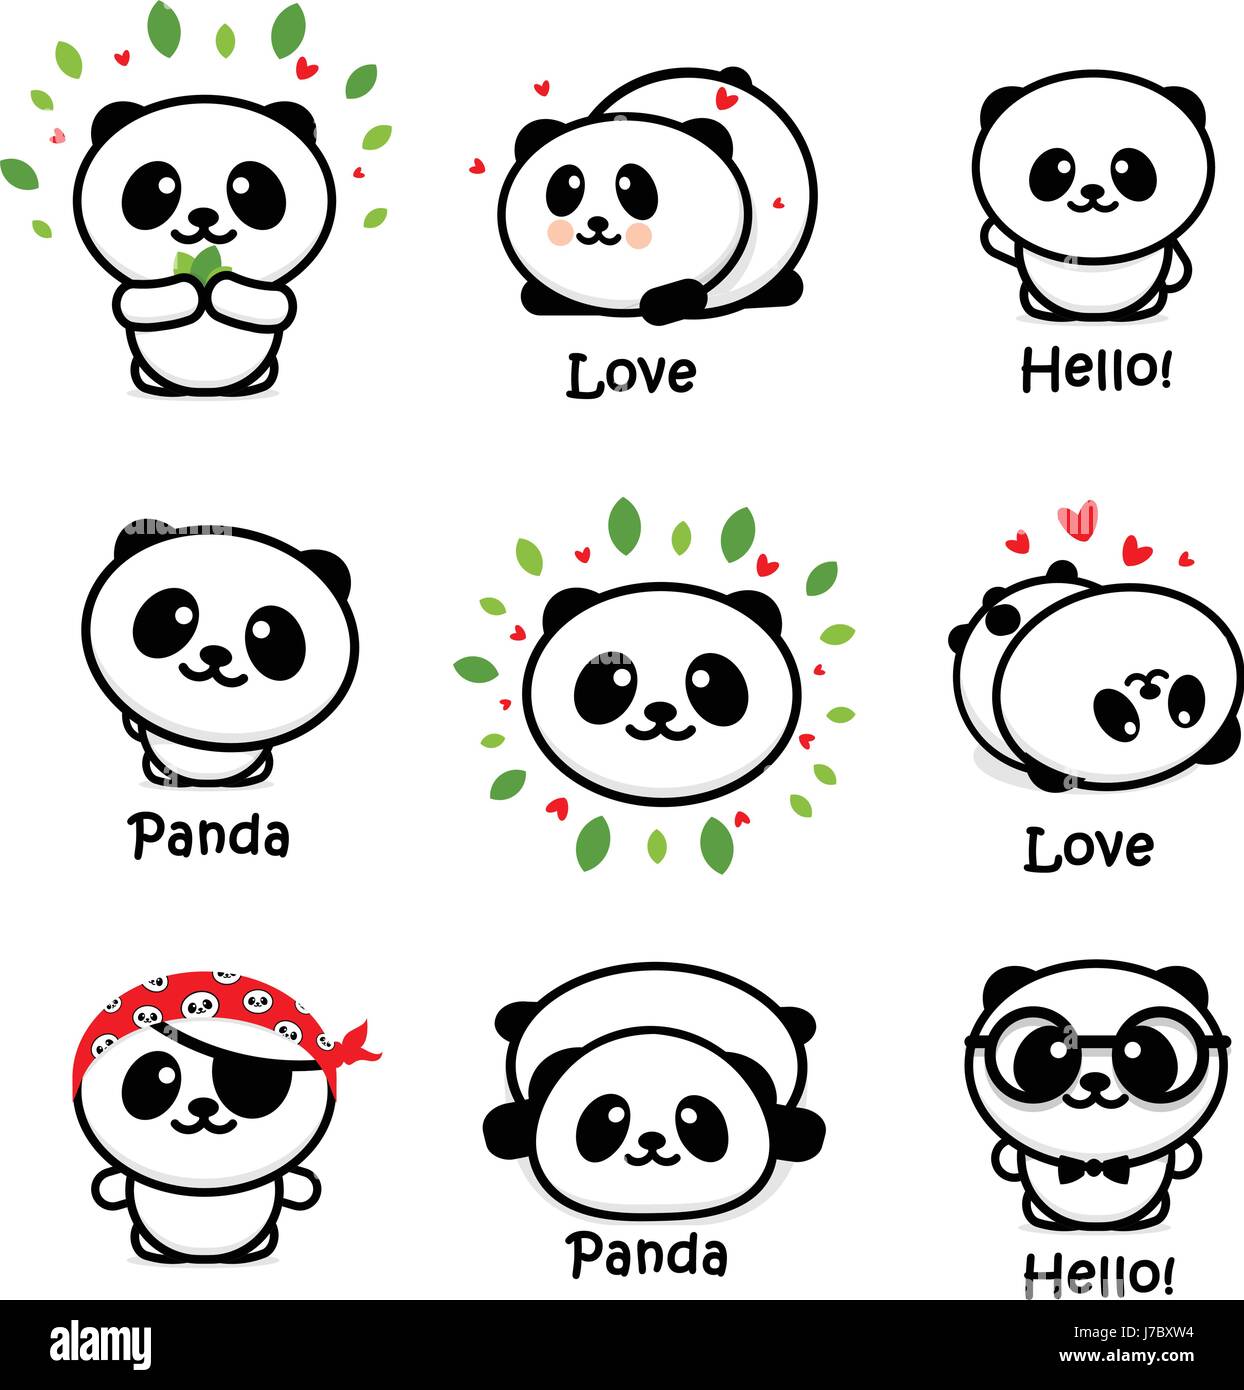 Süße asiatische Pandabär Vektor-Illustrationen, Sammlung von chinesischen Tiere einfach Logo-Elemente, schwarz / weiß-Symbole Stock Vektor